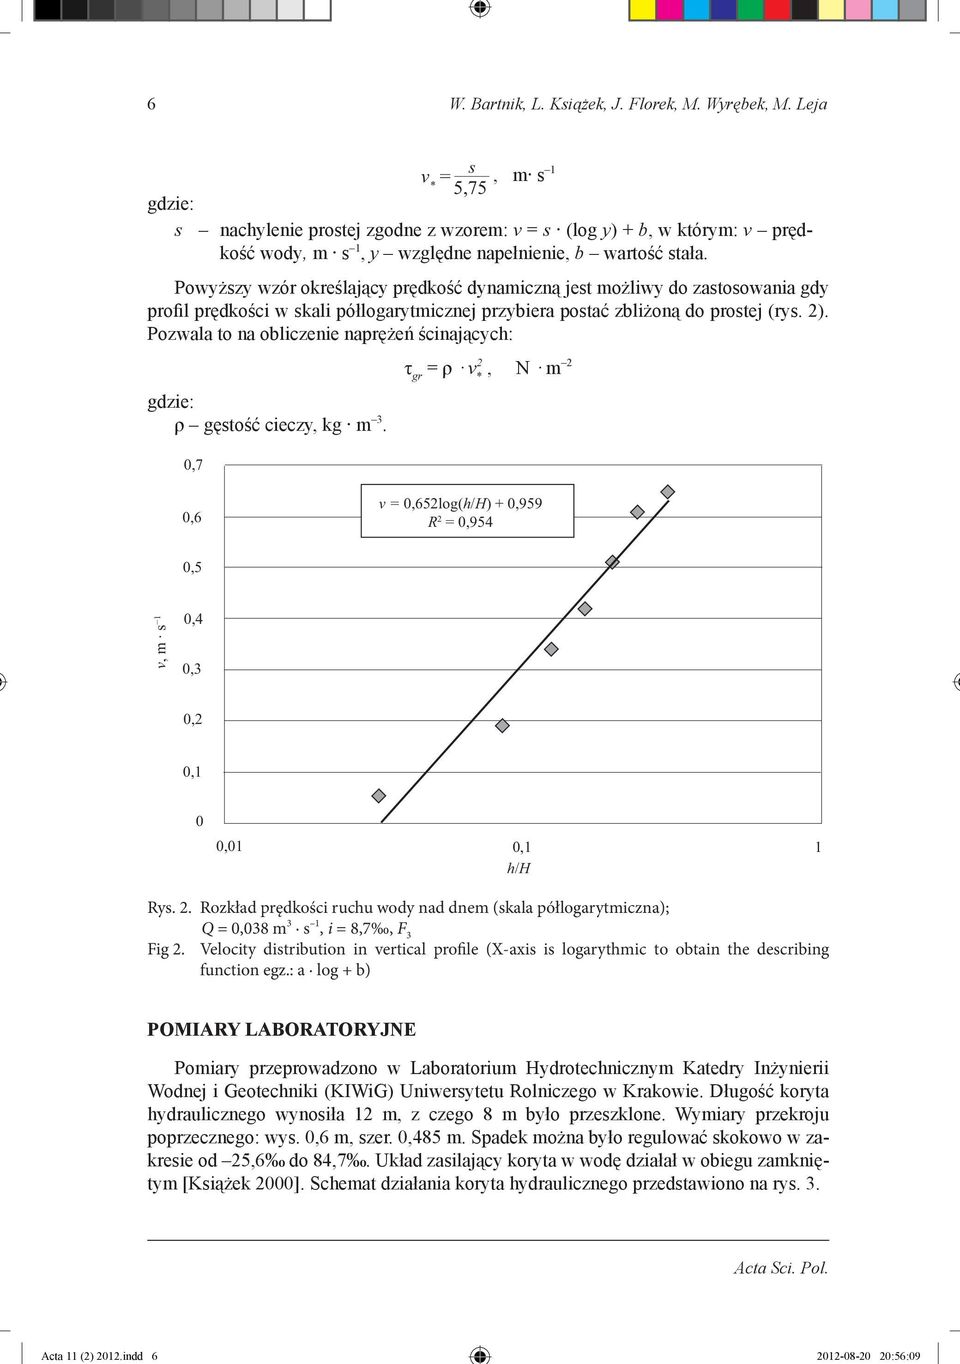 Powyższy wzór określający prędkość dynamiczną jest możliwy do zastosowania gdy profil prędkości w skali półlogarytmicznej przybiera postać zbliżoną do prostej (rys. 2).